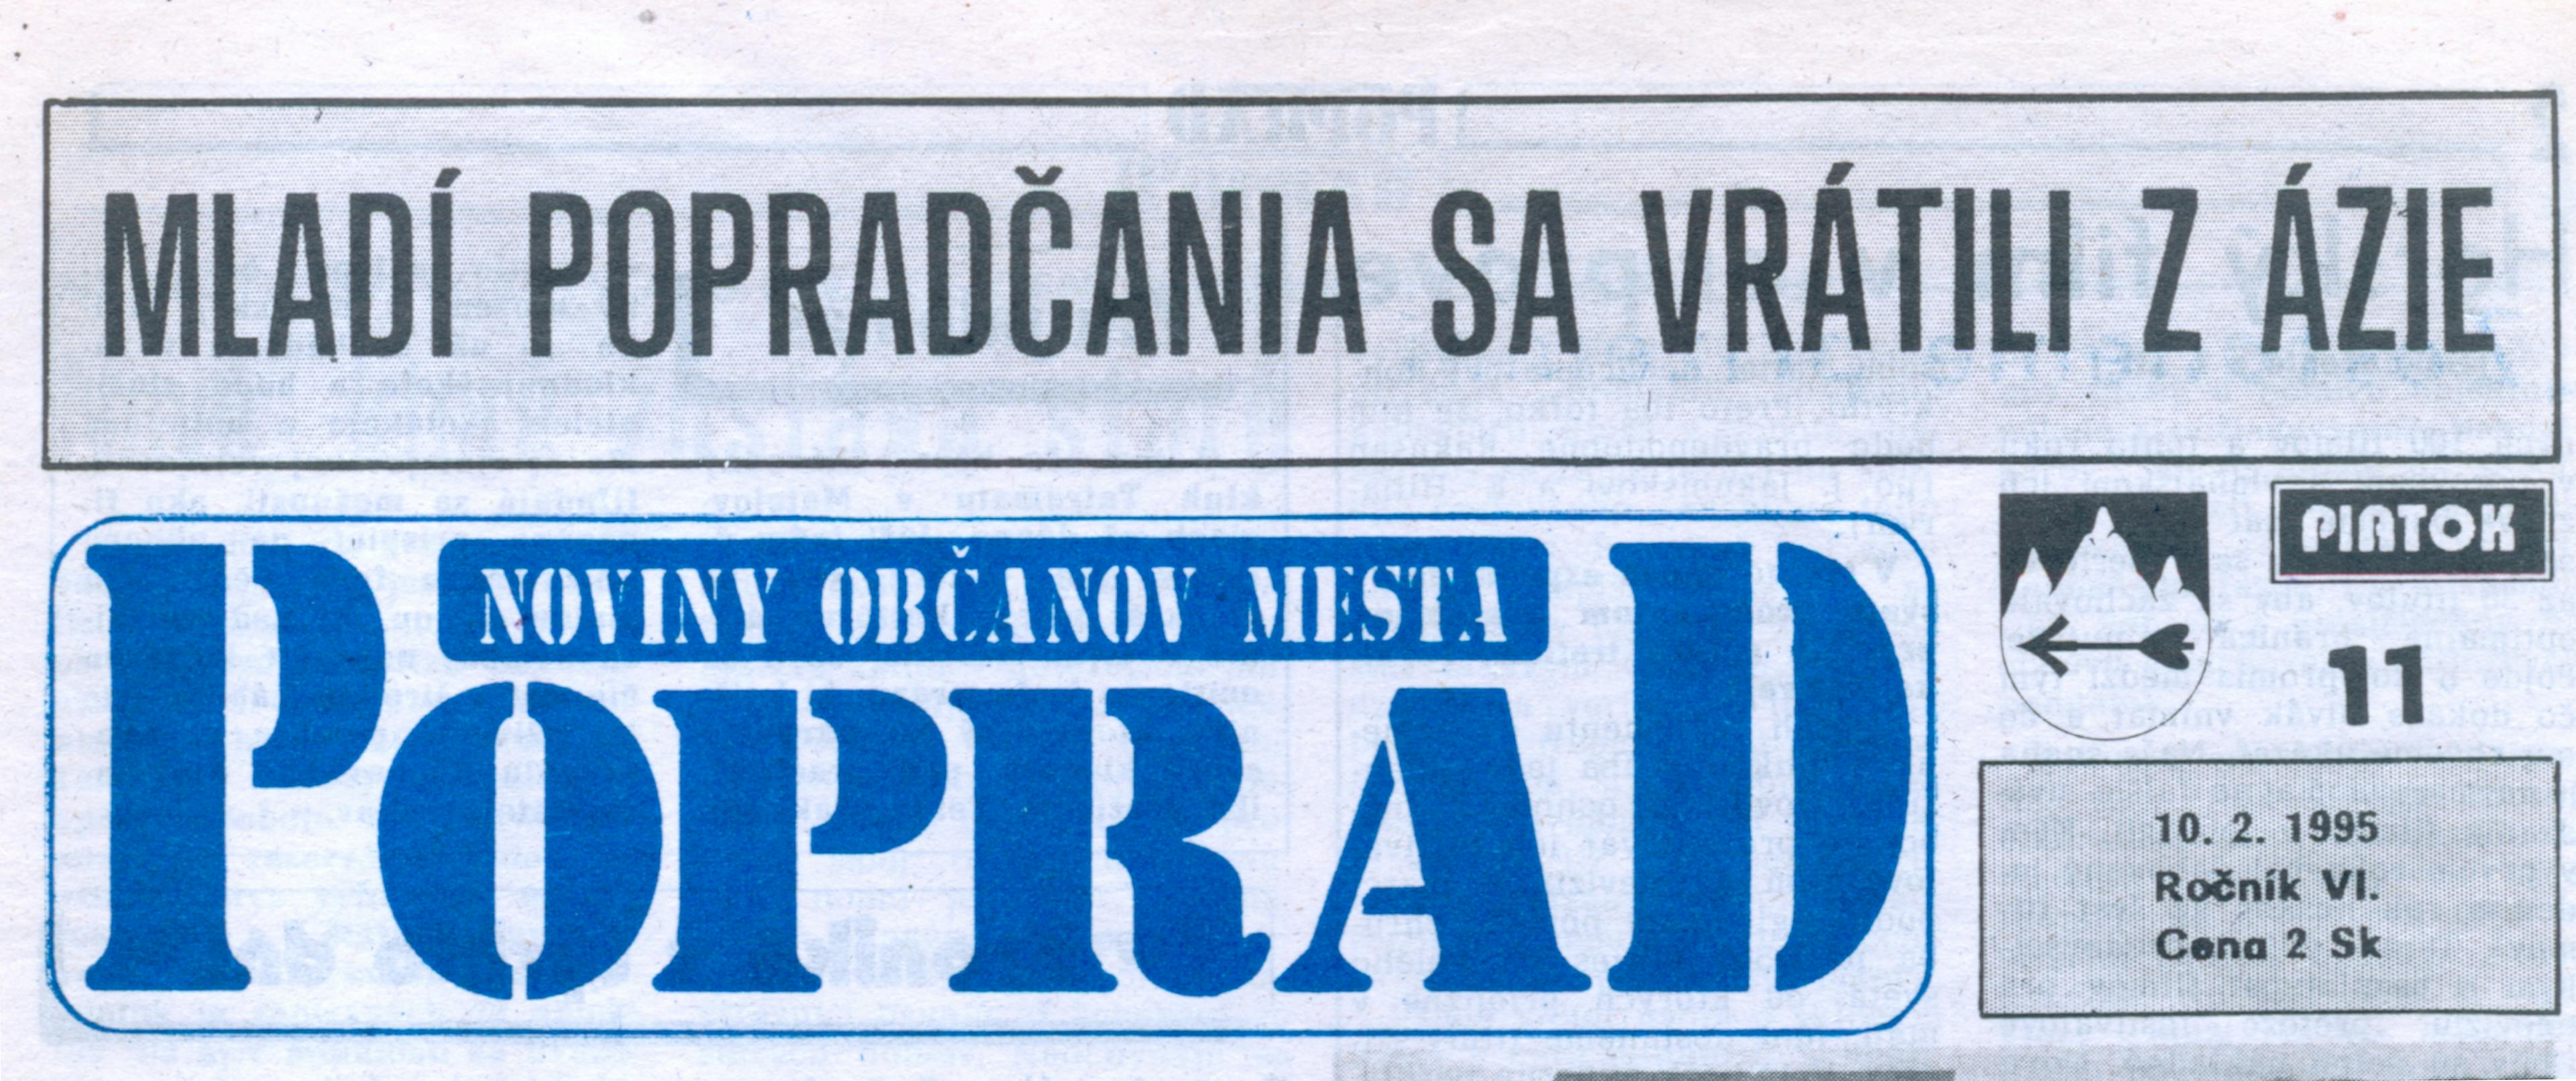 Titulná strana novín Poprad: "Mladí Popradčania sa vrátili z Ázie"